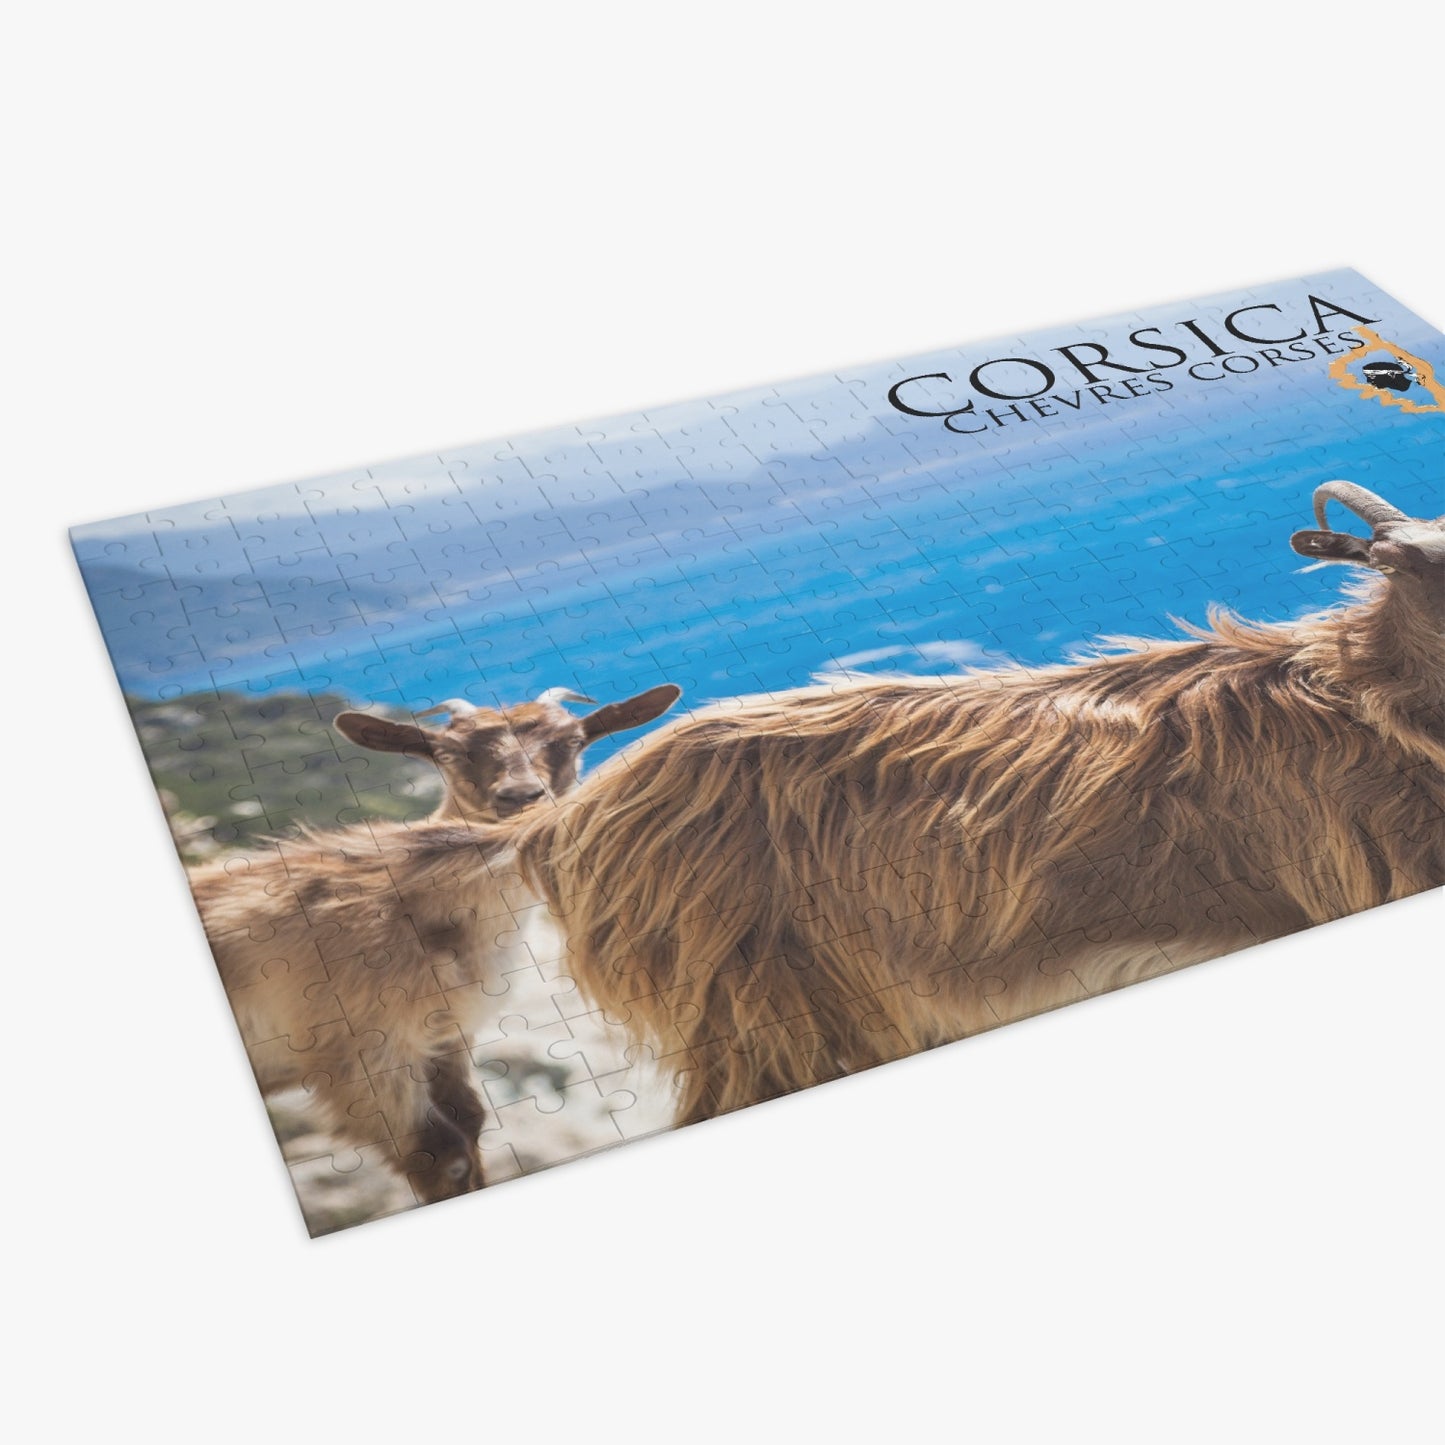 Puzzle (500 pièces) Chèvres Corses